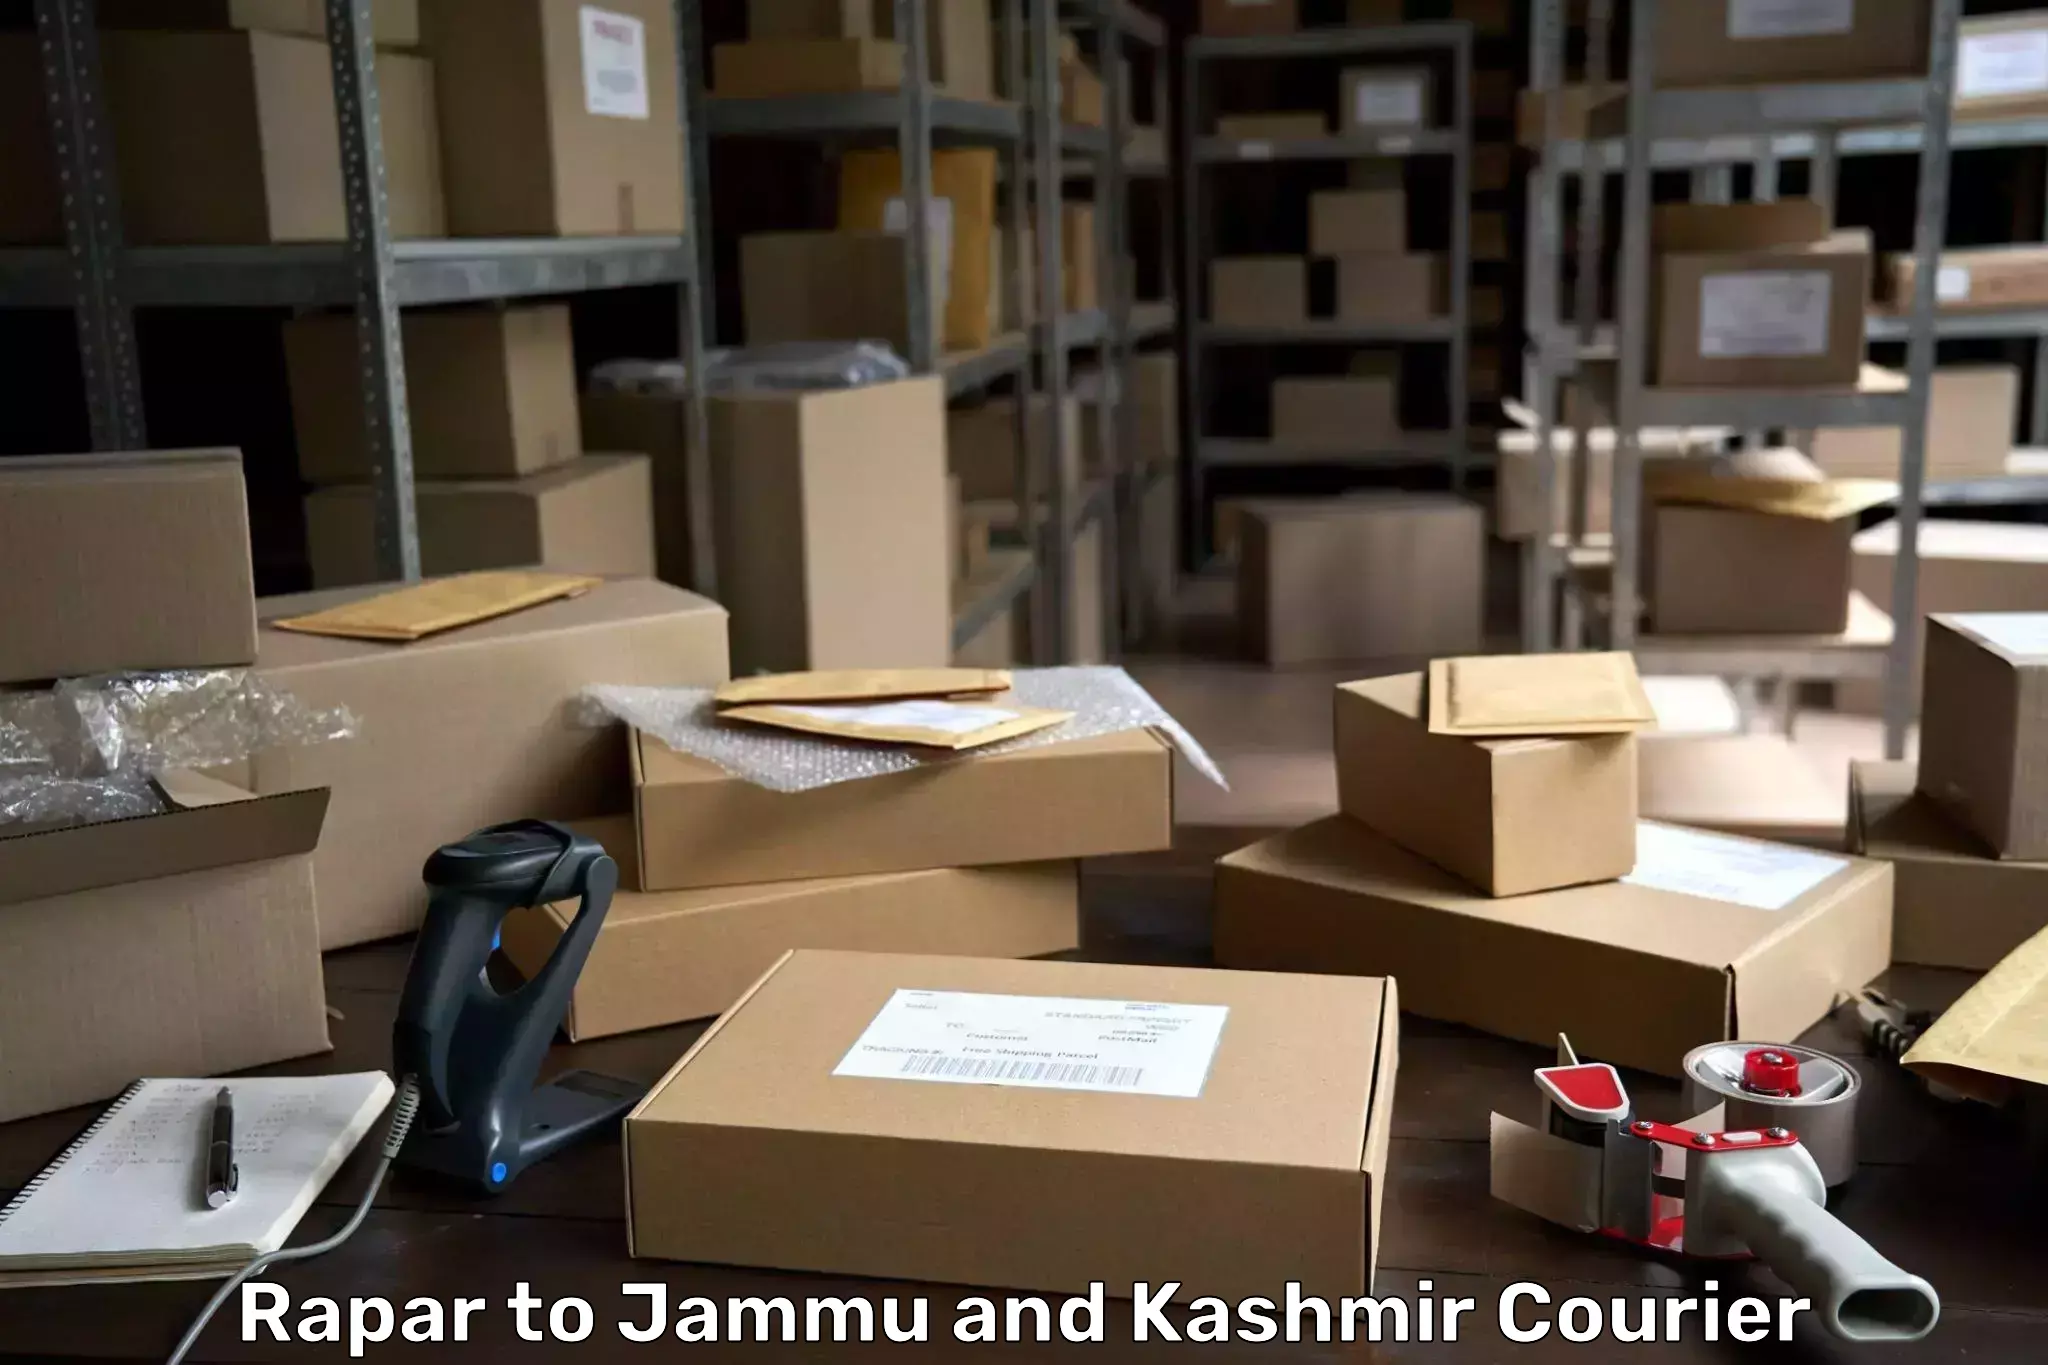 Automated parcel services Rapar to Jammu